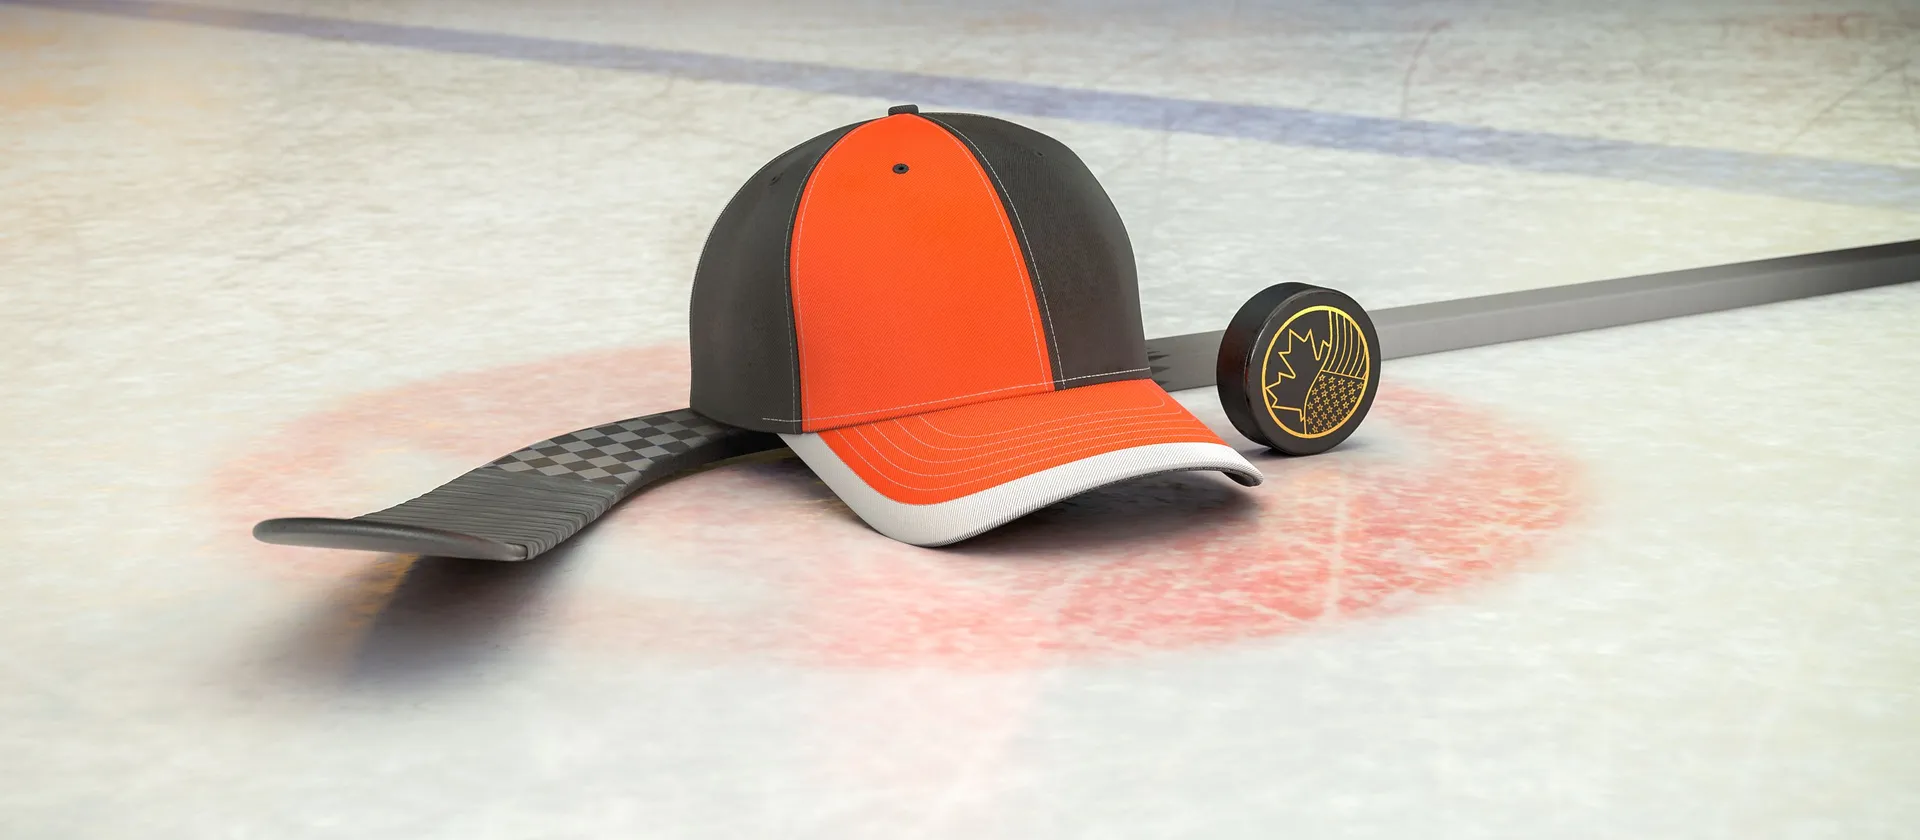 Bild på hockeyklubba, puck och en supporterkeps med NHL-laget Philadelphia Flyers färger